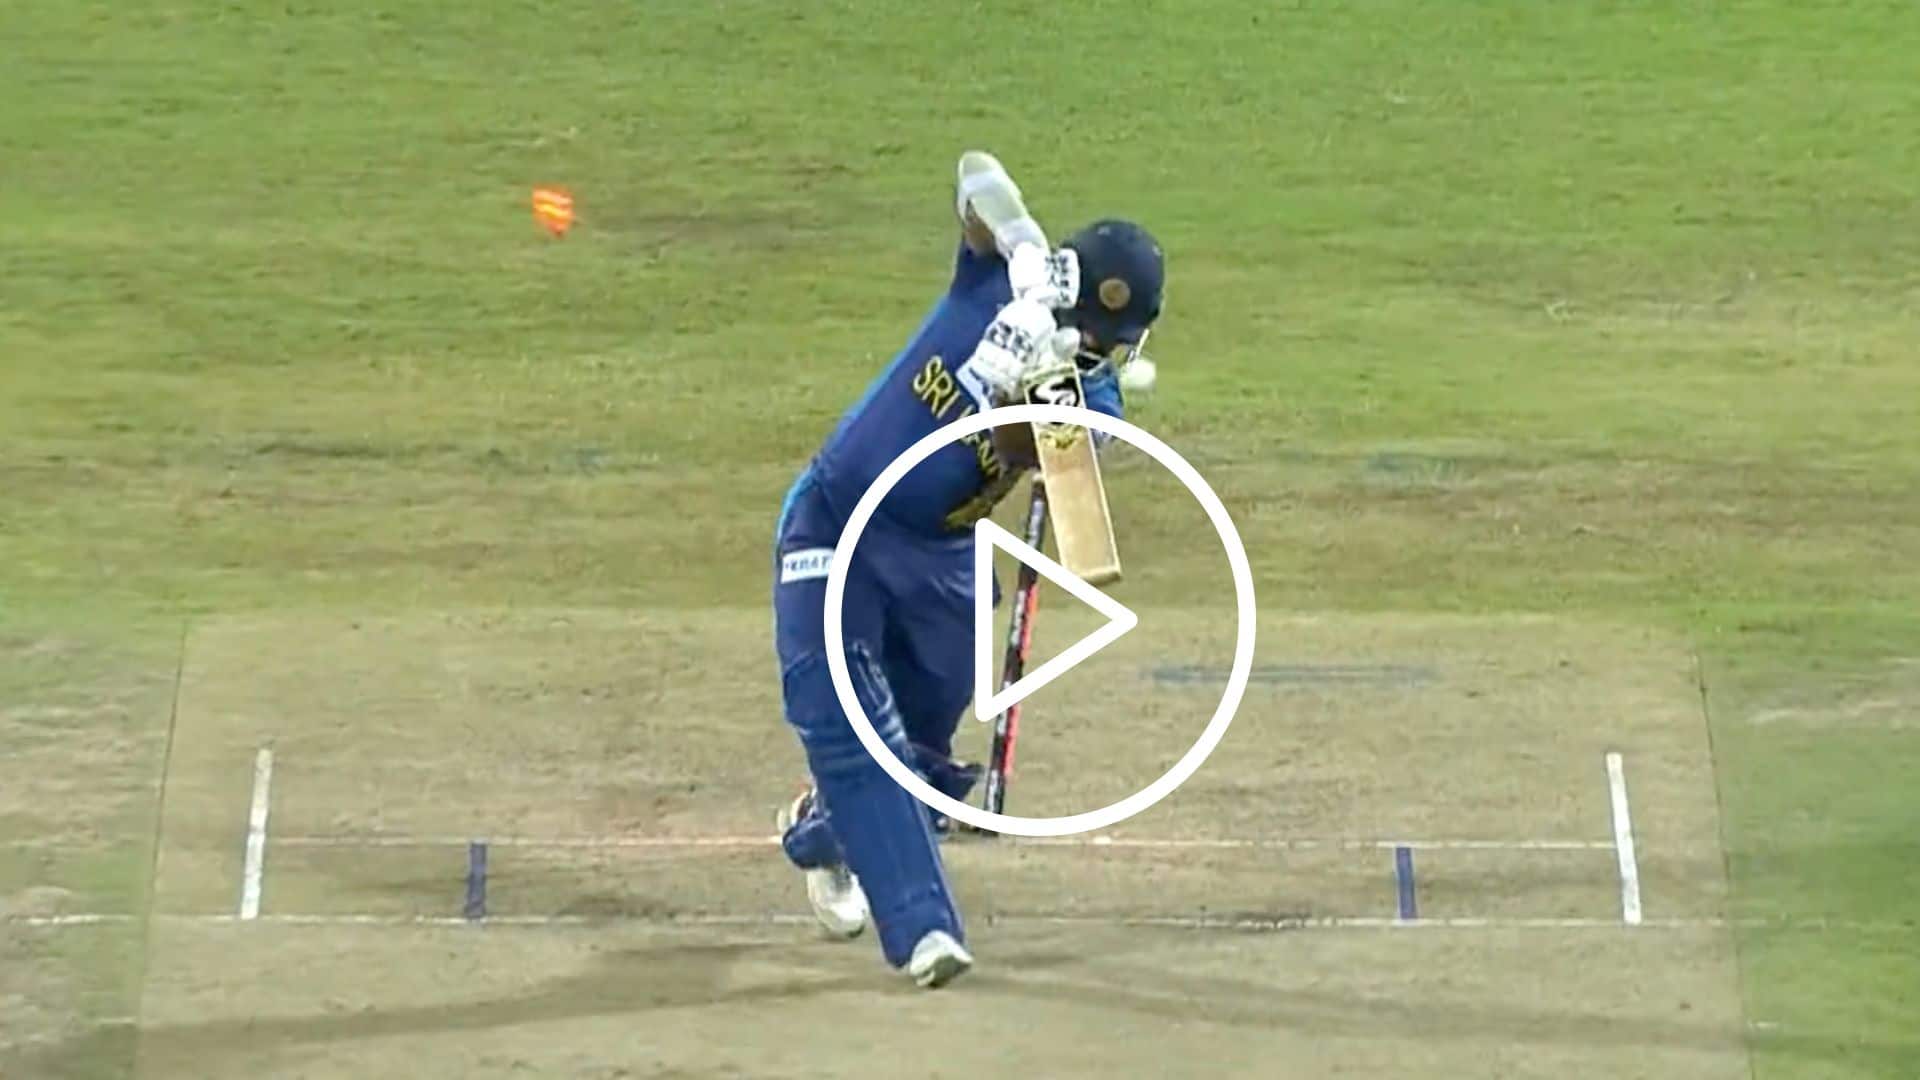 [Watch] Taskin Ahmed Cleans Up Ex-Sri Lankan ODI Skipper In Intense Asia Cup Game